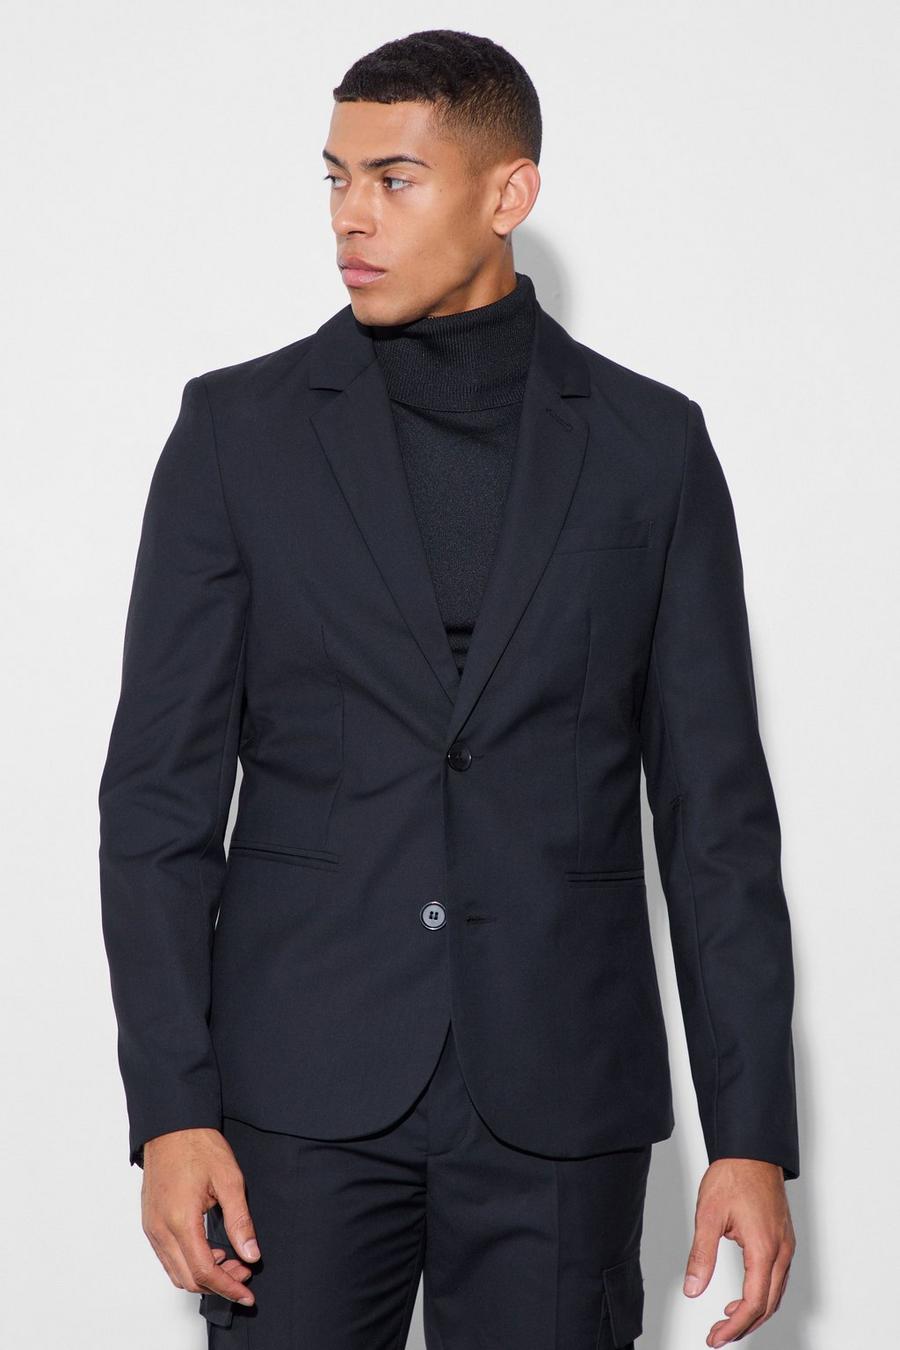 Black Skinny Fit Suit Jacket image number 1